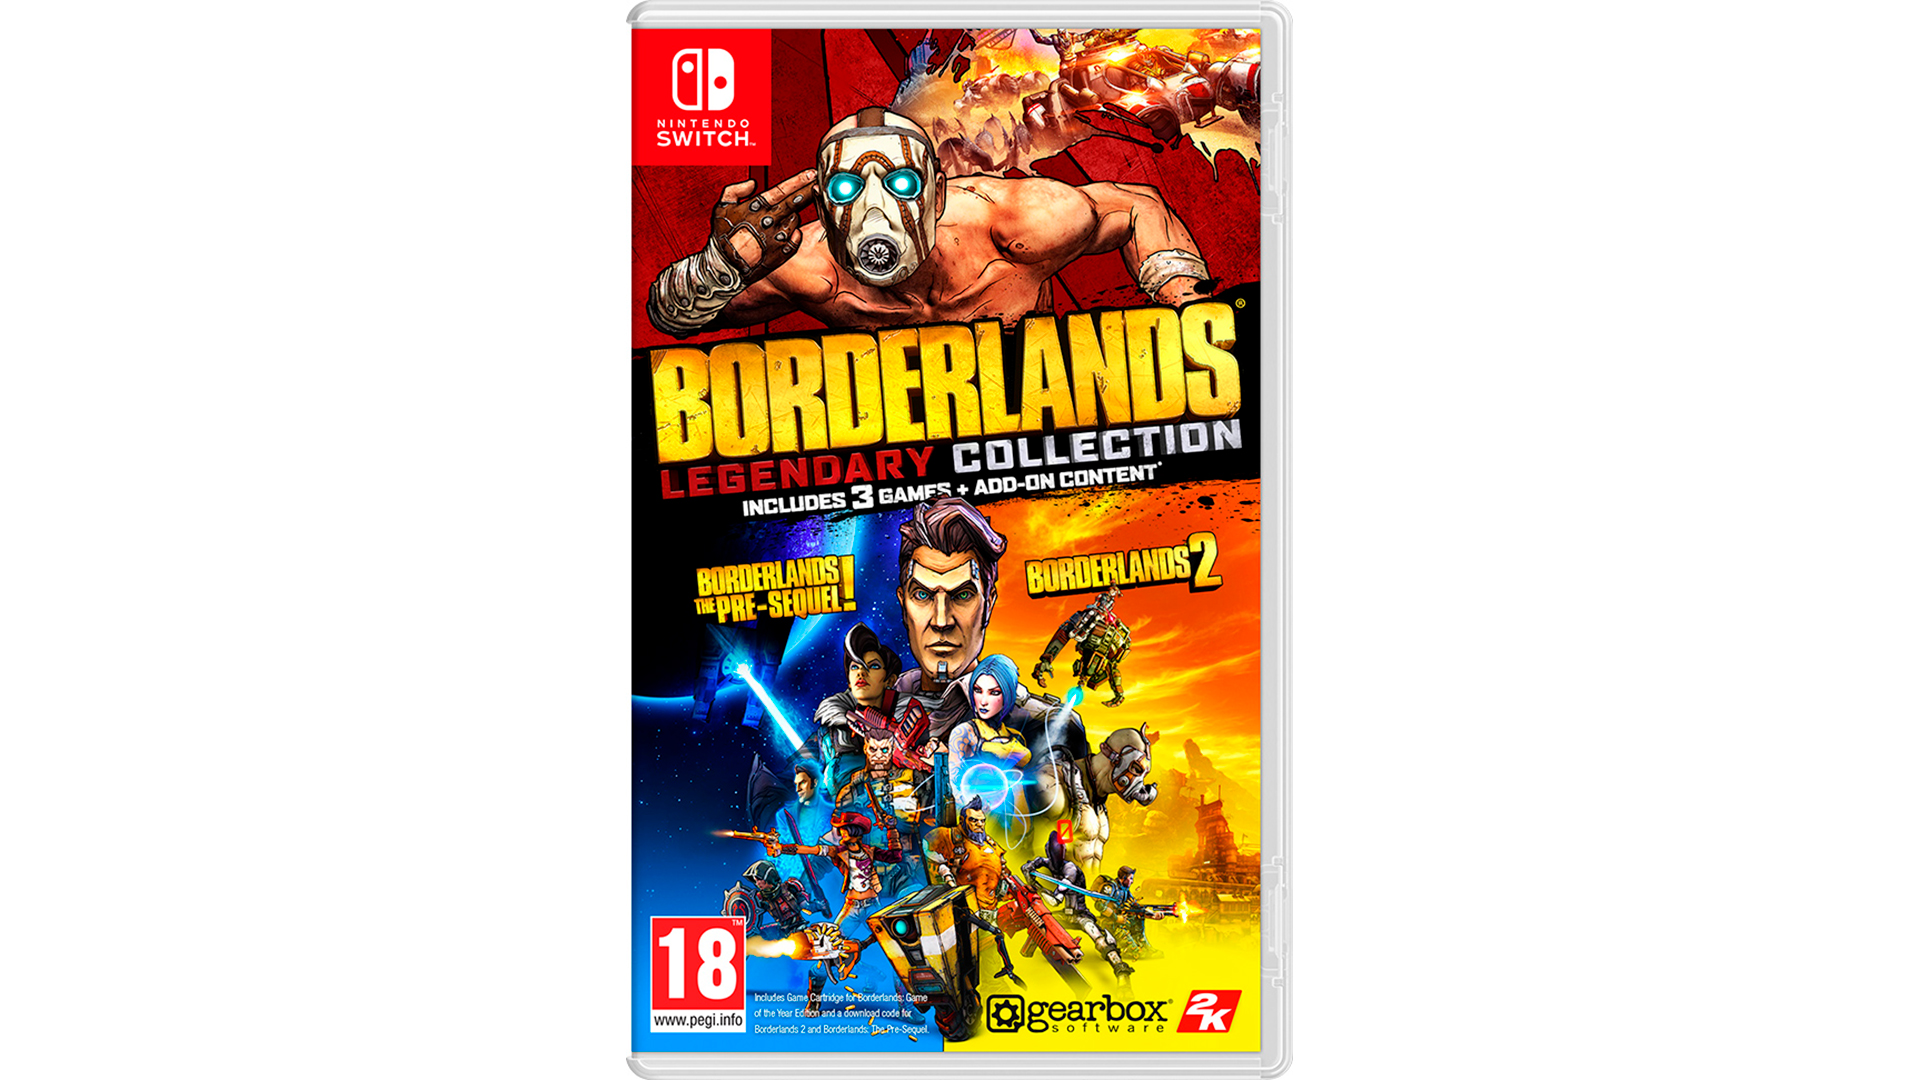 Borderlands nintendo. Borderlands Nintendo Switch. Borderlands Legendary collection. Borderlands Legendary collection Xbox. Бордерлендс легендари коллекшн.